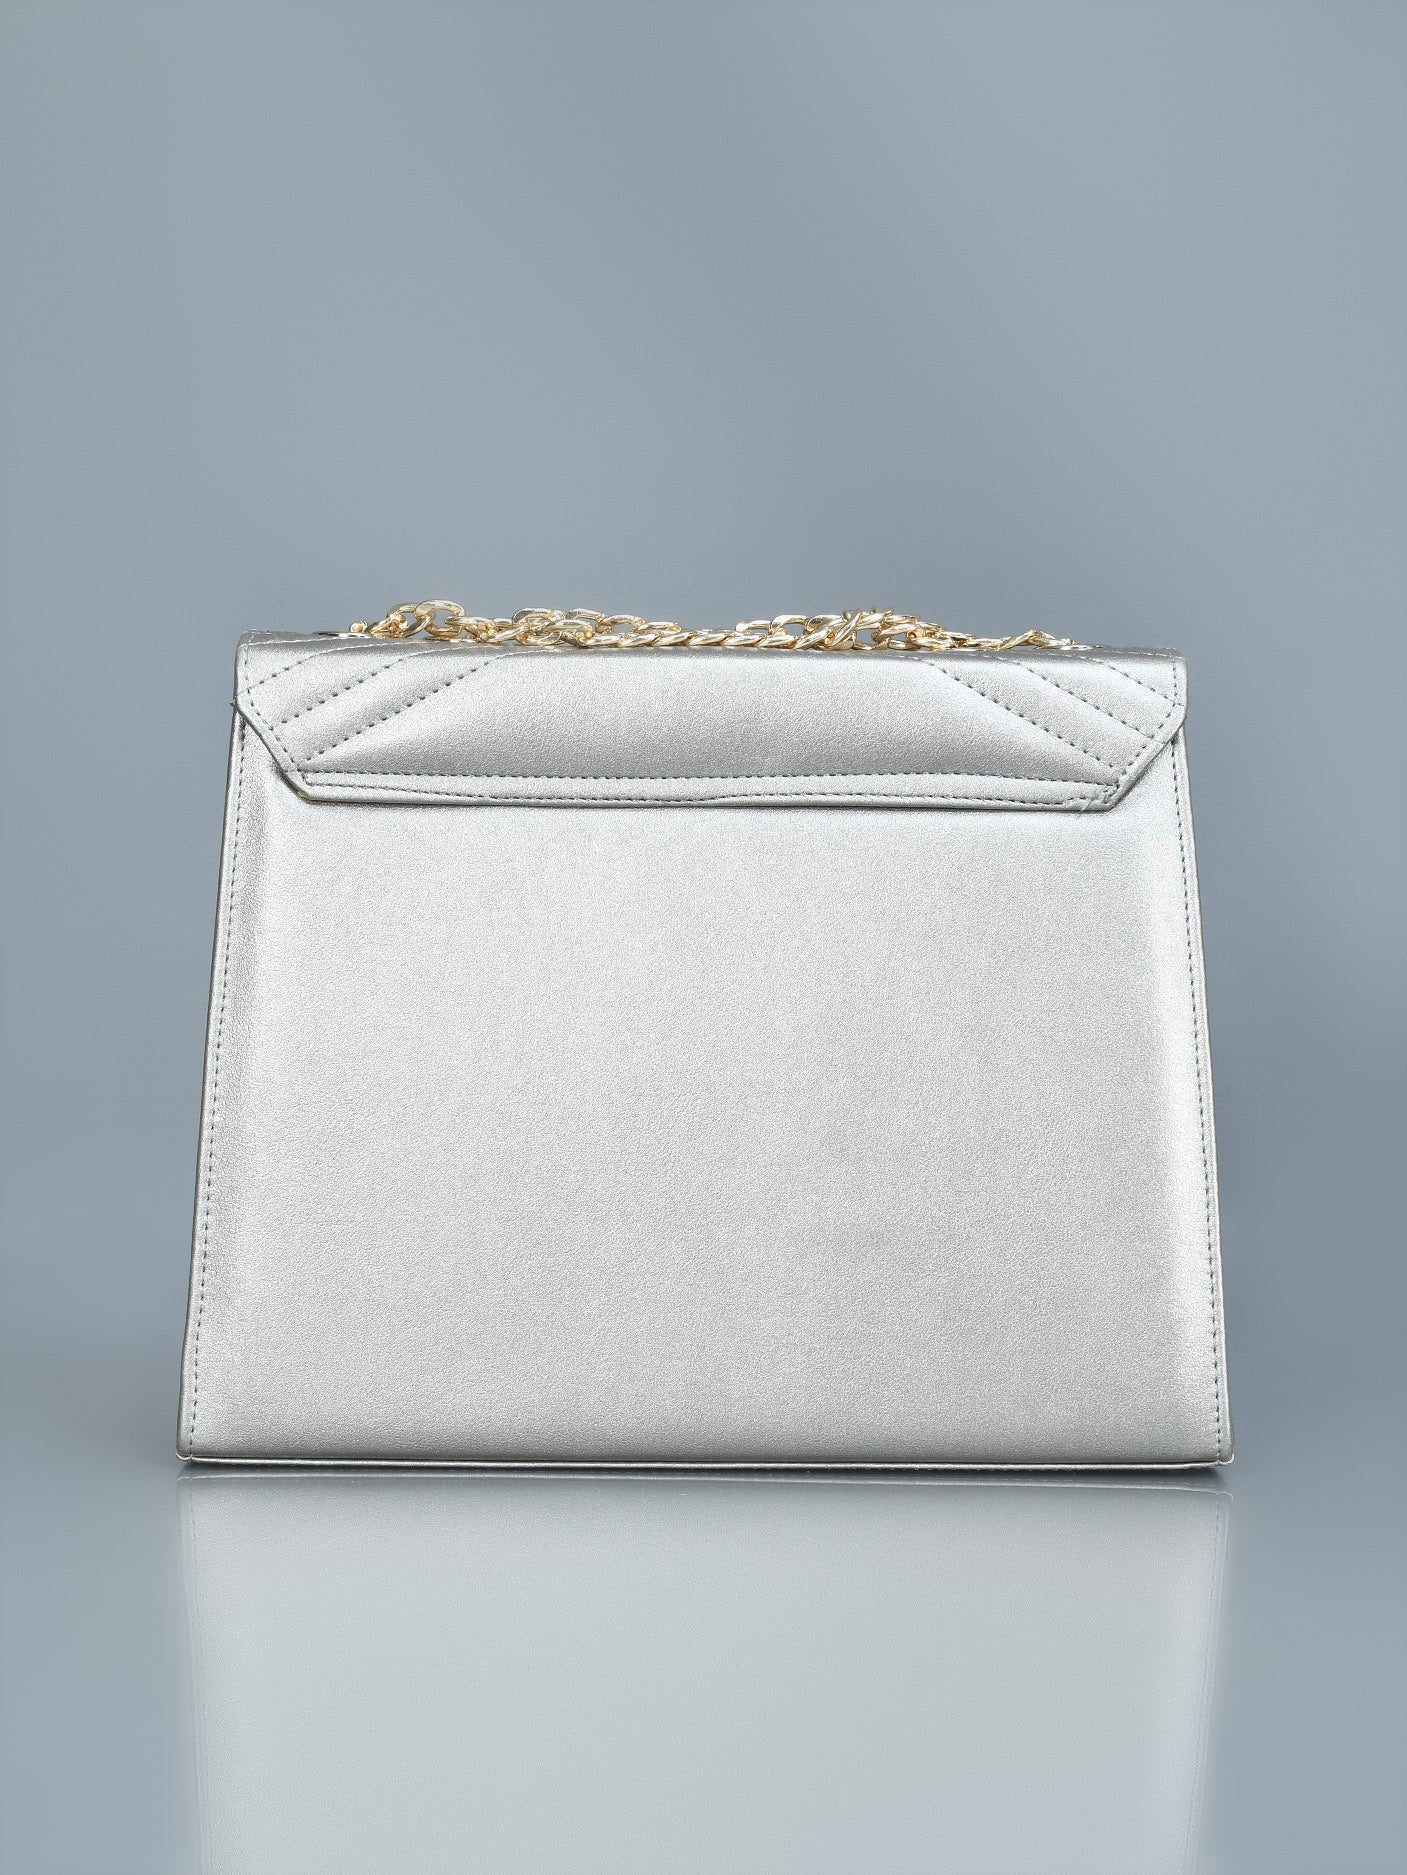 envelope-shaped-bag